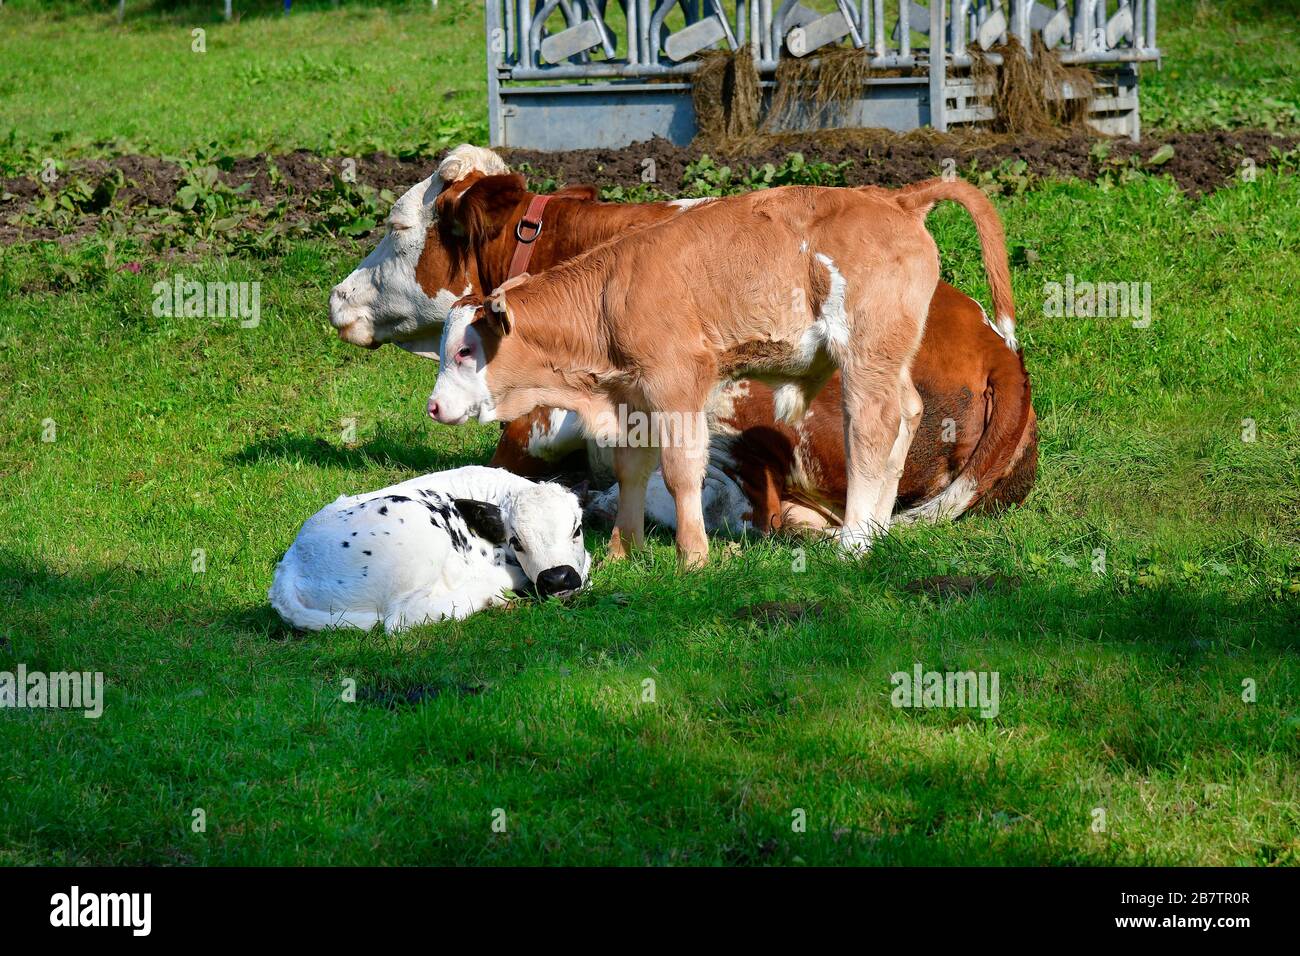 Austria, allevamento di bovini - madre con vitelli al pascolo Foto Stock